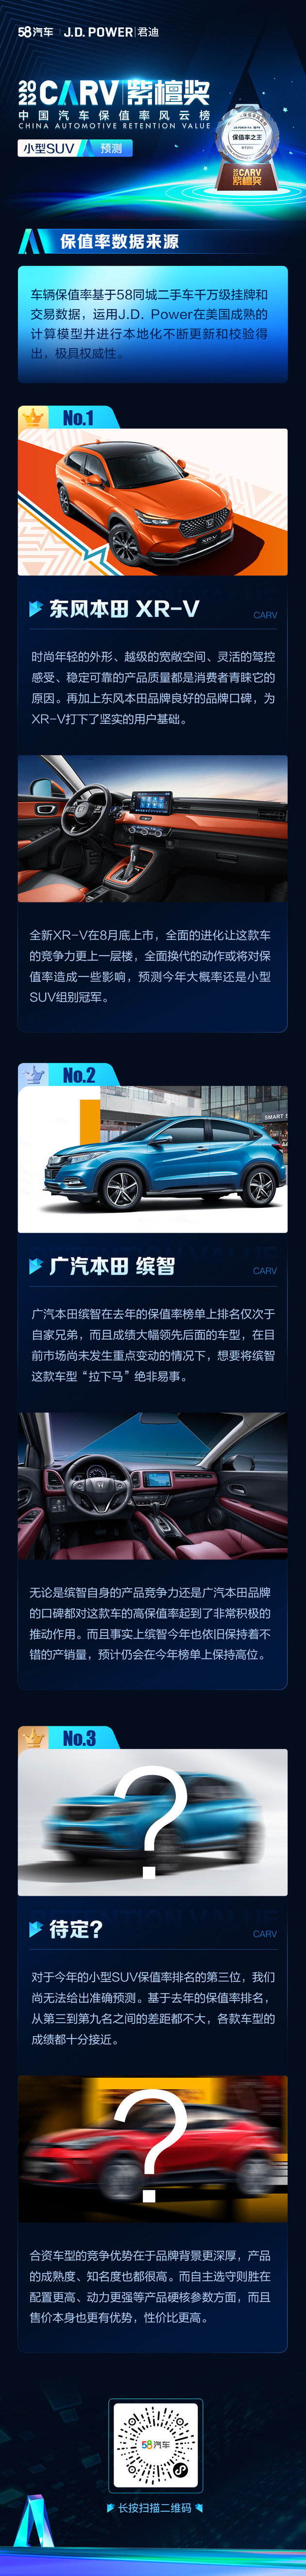 2022保值率小型SUV榜单预测 东风本田XR-V或再度蝉联冠军